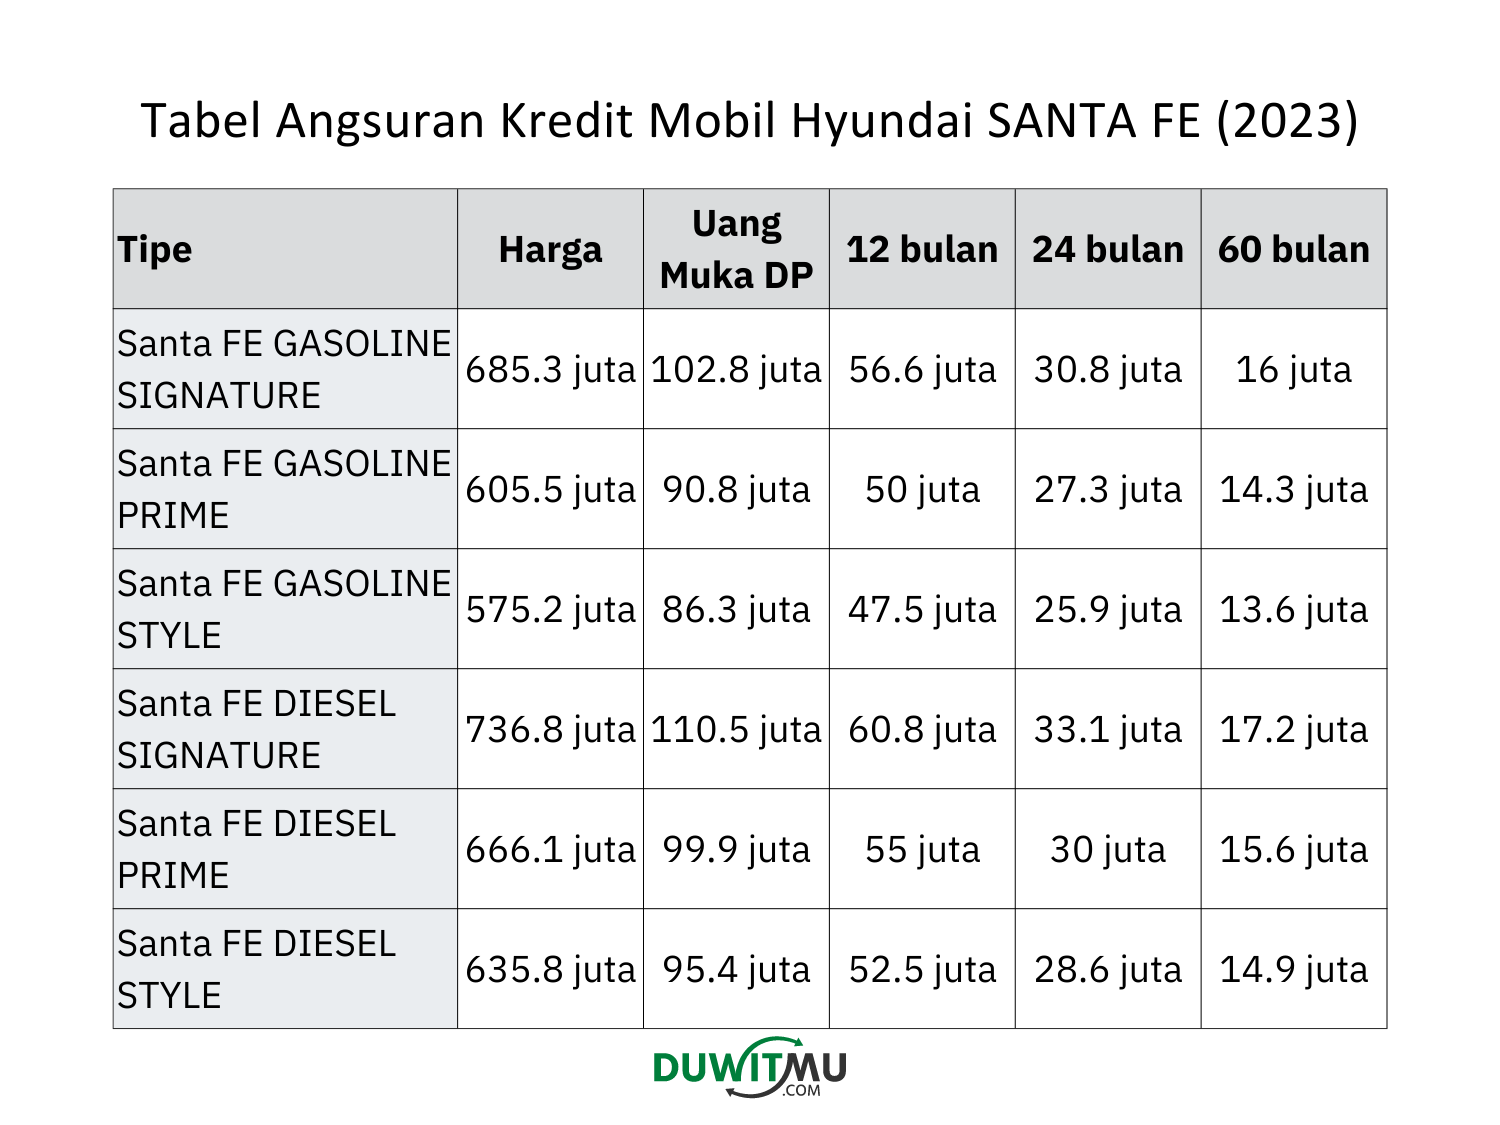 Tabel Angsuran Hyundai Santa FE, DP Uang Muka